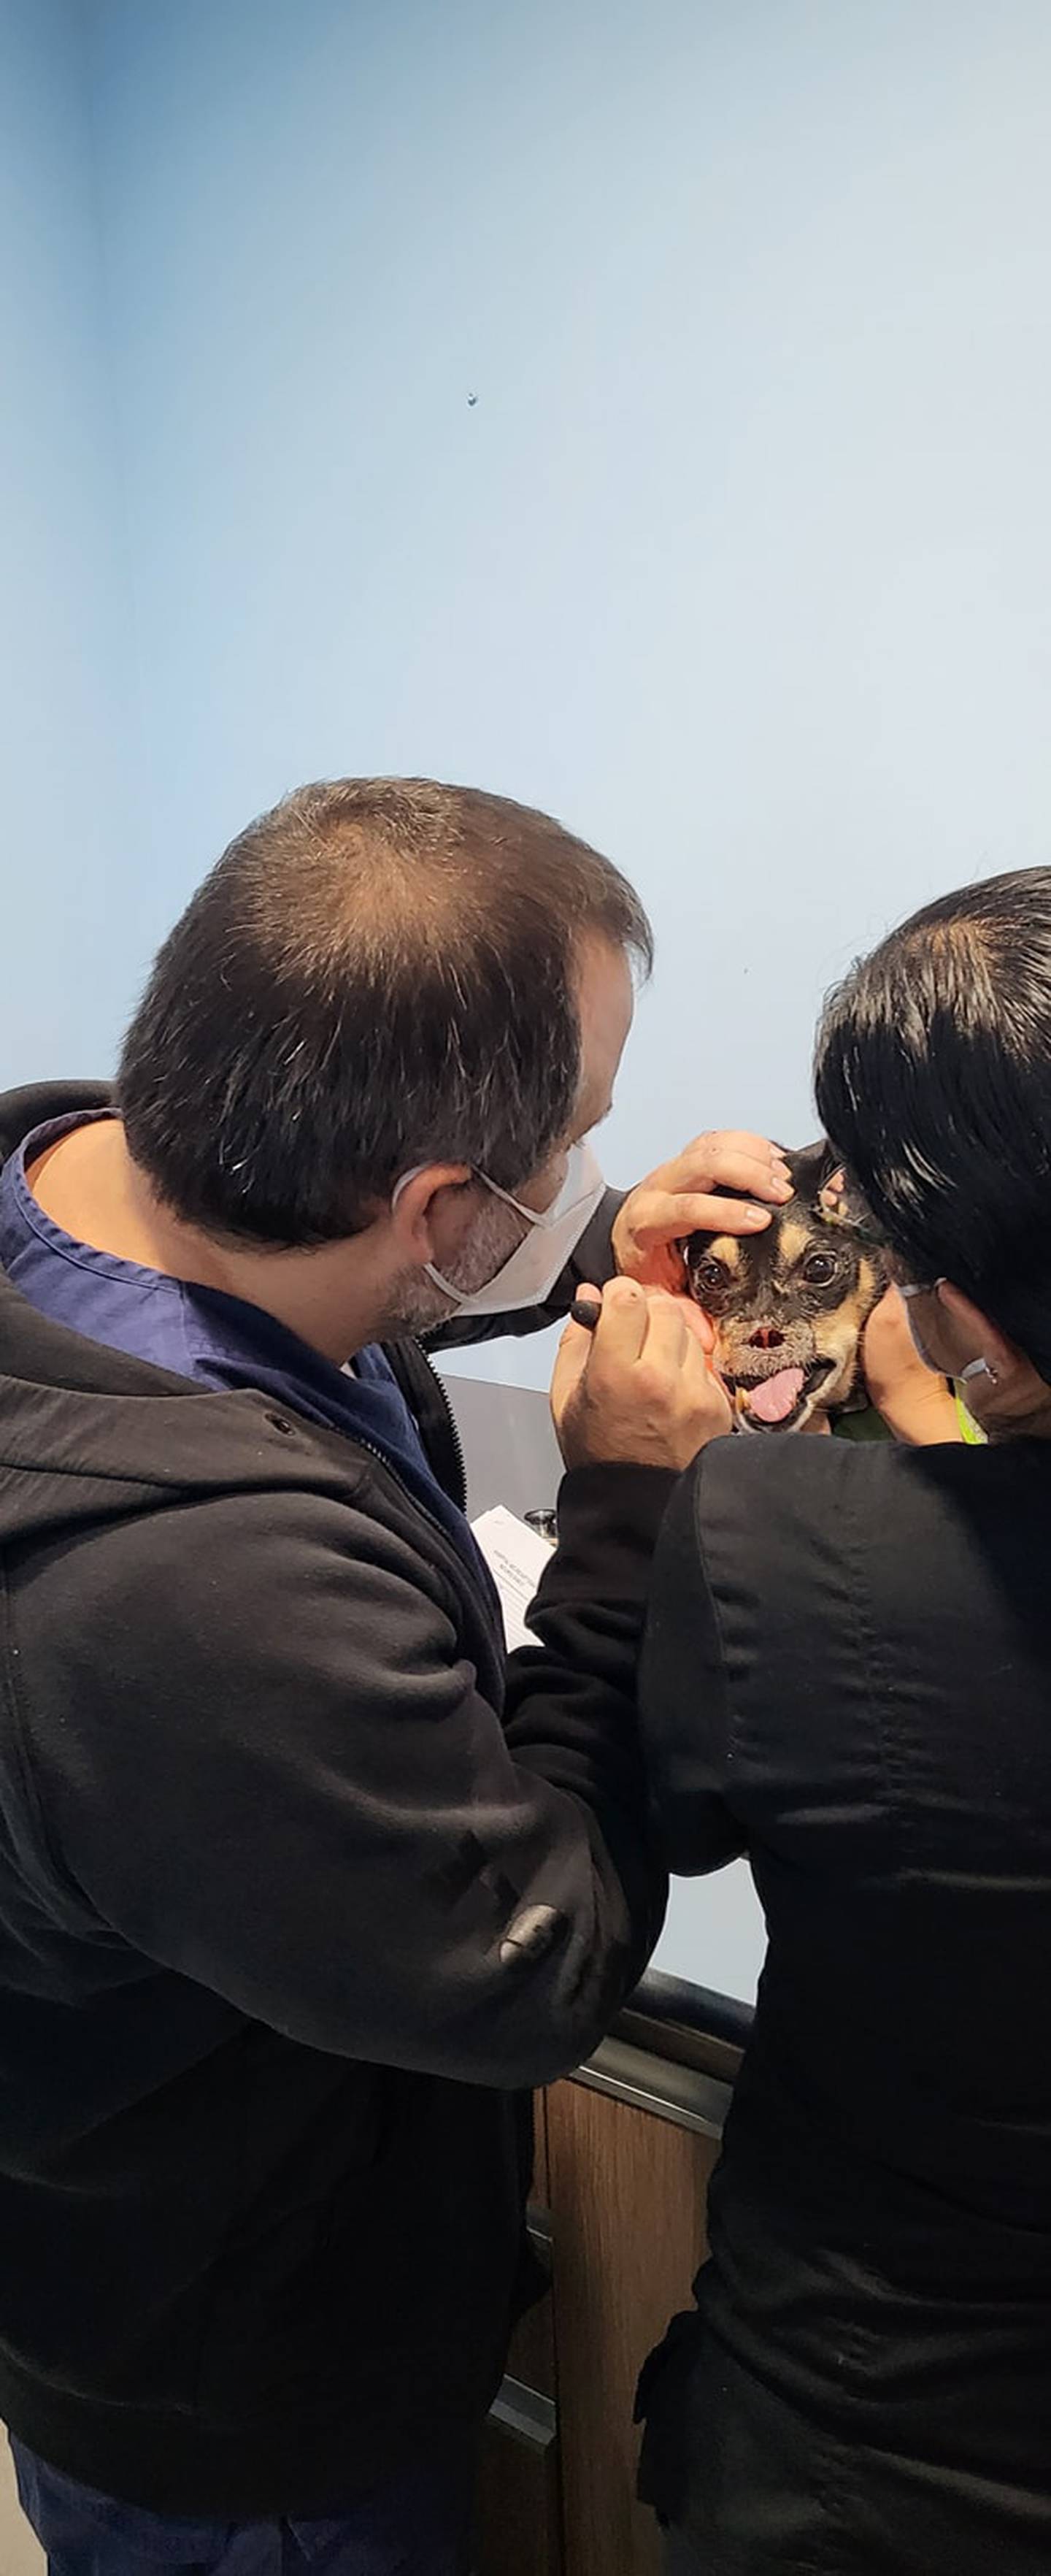 Al zaguatico Duke, símbolo del maltrato animal desde el 2016, se le desarrolló epilepsia, confirmaron los especialistas de la veterinaria Neurovet, después de varios exámenes que le realizaron